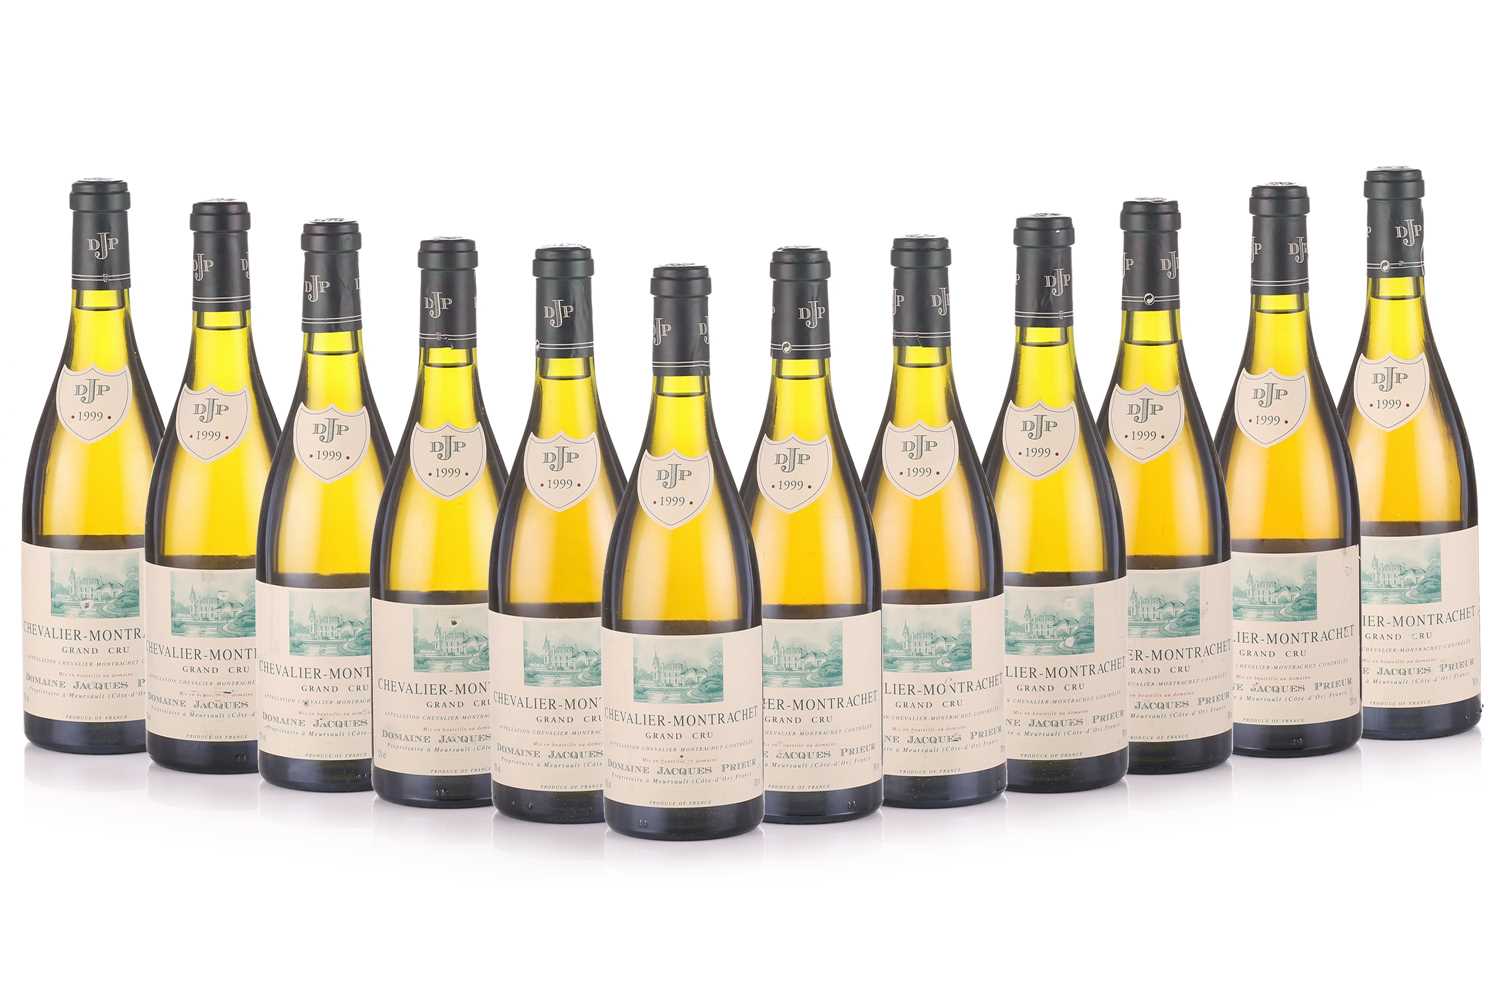 12 bottles of Chevalier Montrachet Grand Cru Domaine Jacques Prieur